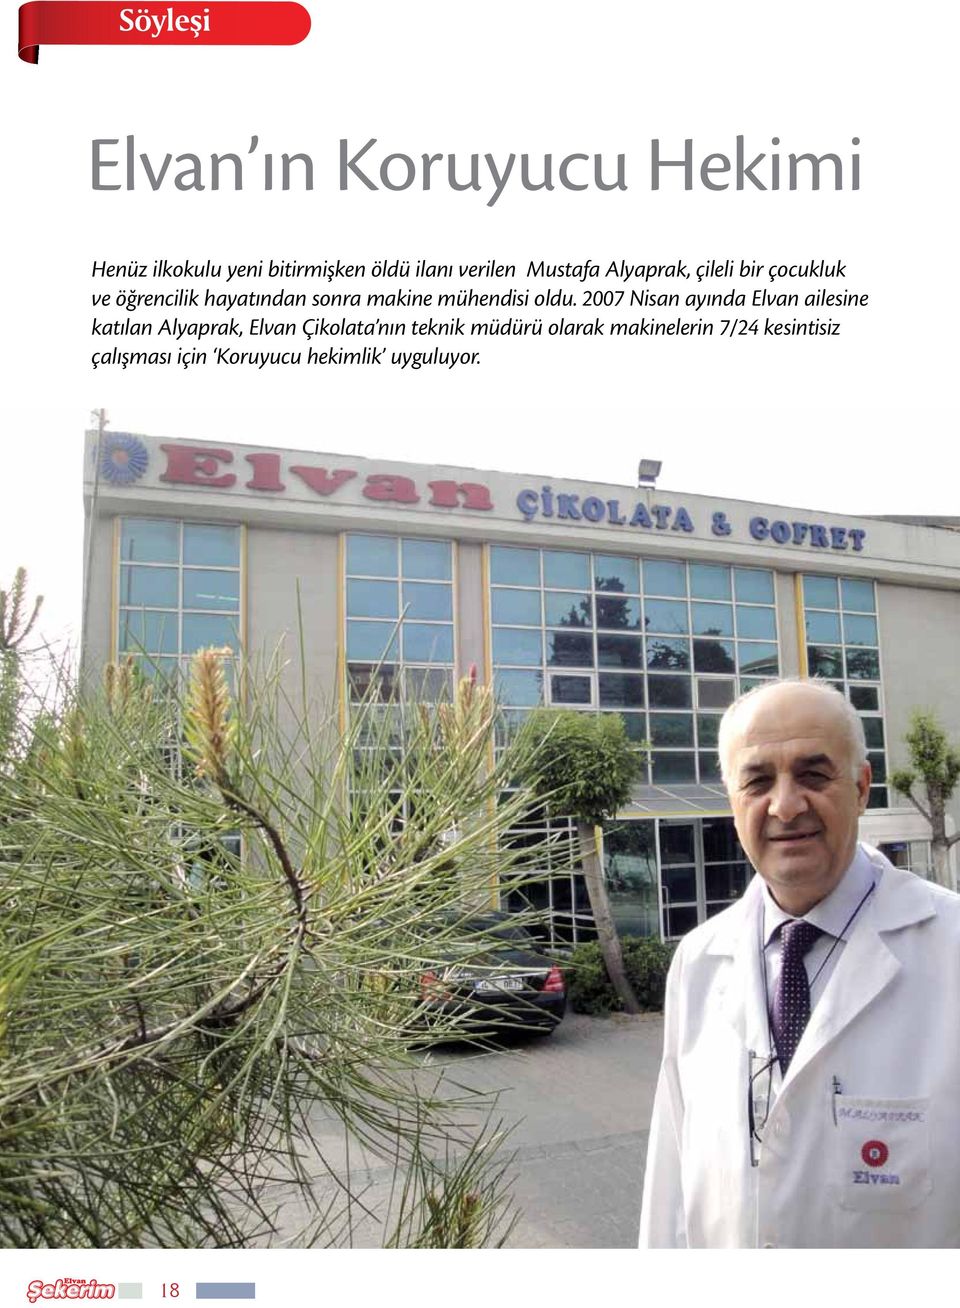 2007 Nisan ayında Elvan ailesine katılan Alyaprak, Elvan Çikolata nın teknik müdürü